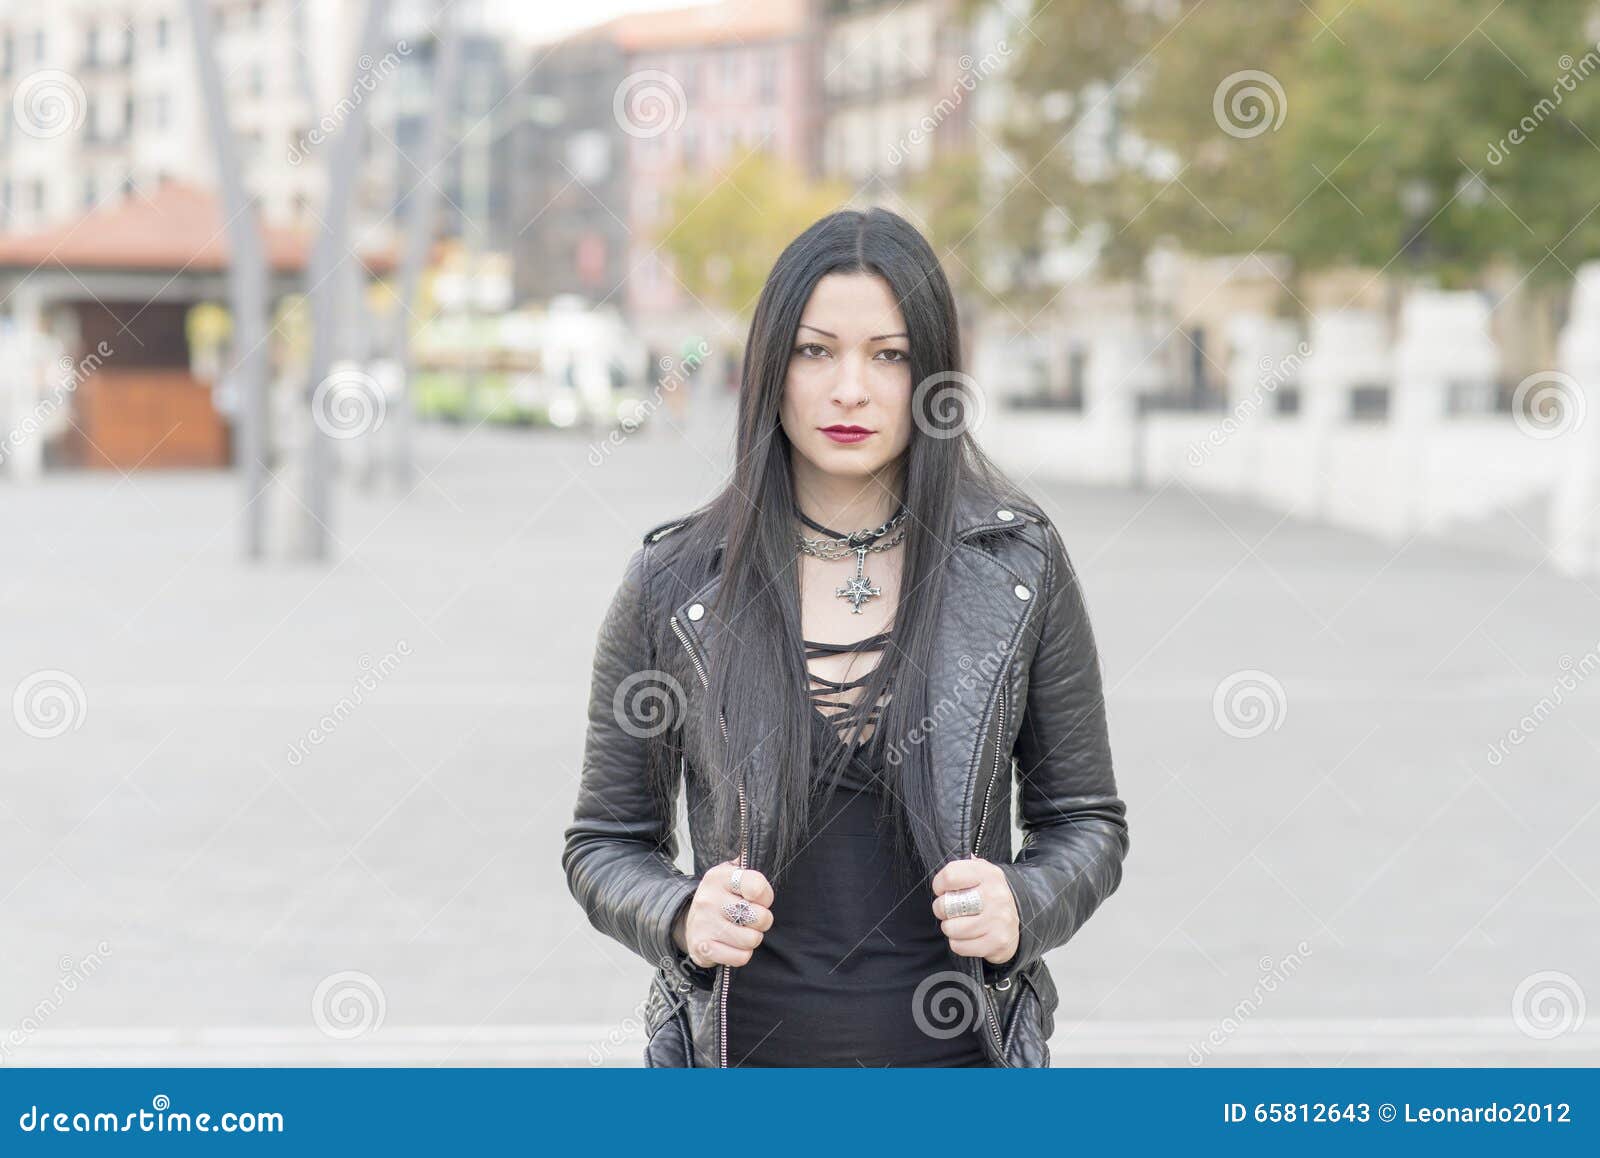 Urban Portrait Of Beautiful Woman Heavy Metal Style Stock Image Image Of Beautiful Style